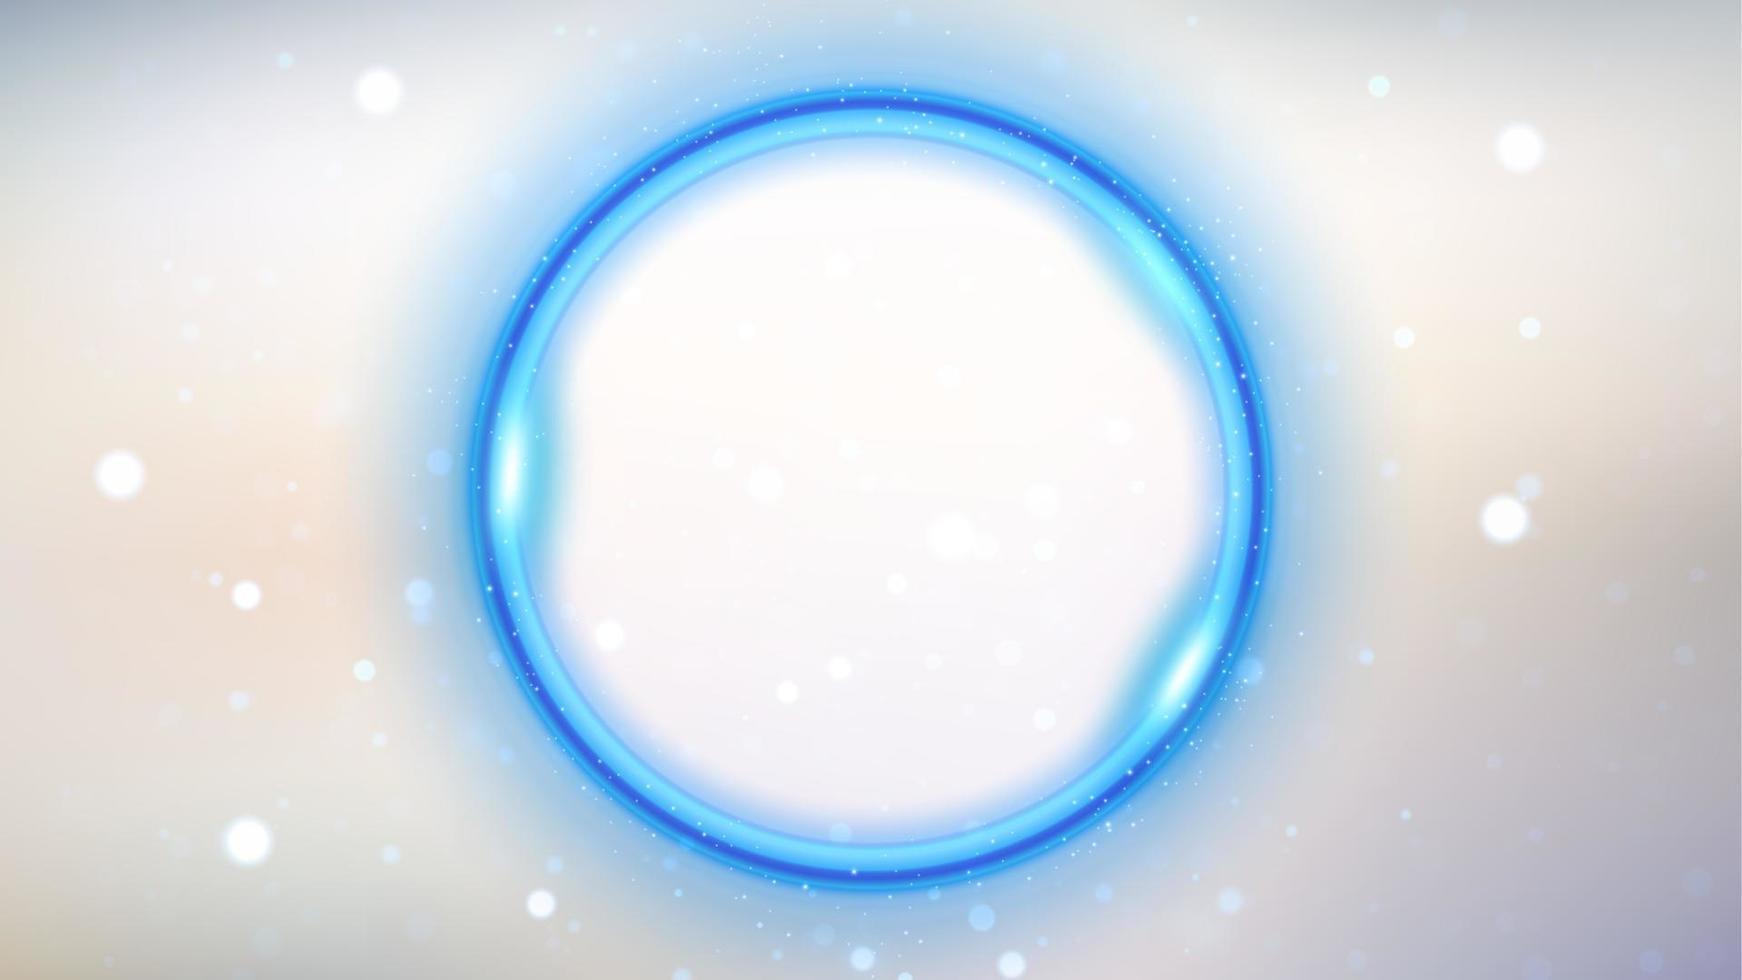 círculo brilhante azul sobre fundo branco, anel de luz elegante. ilustração vetorial vetor